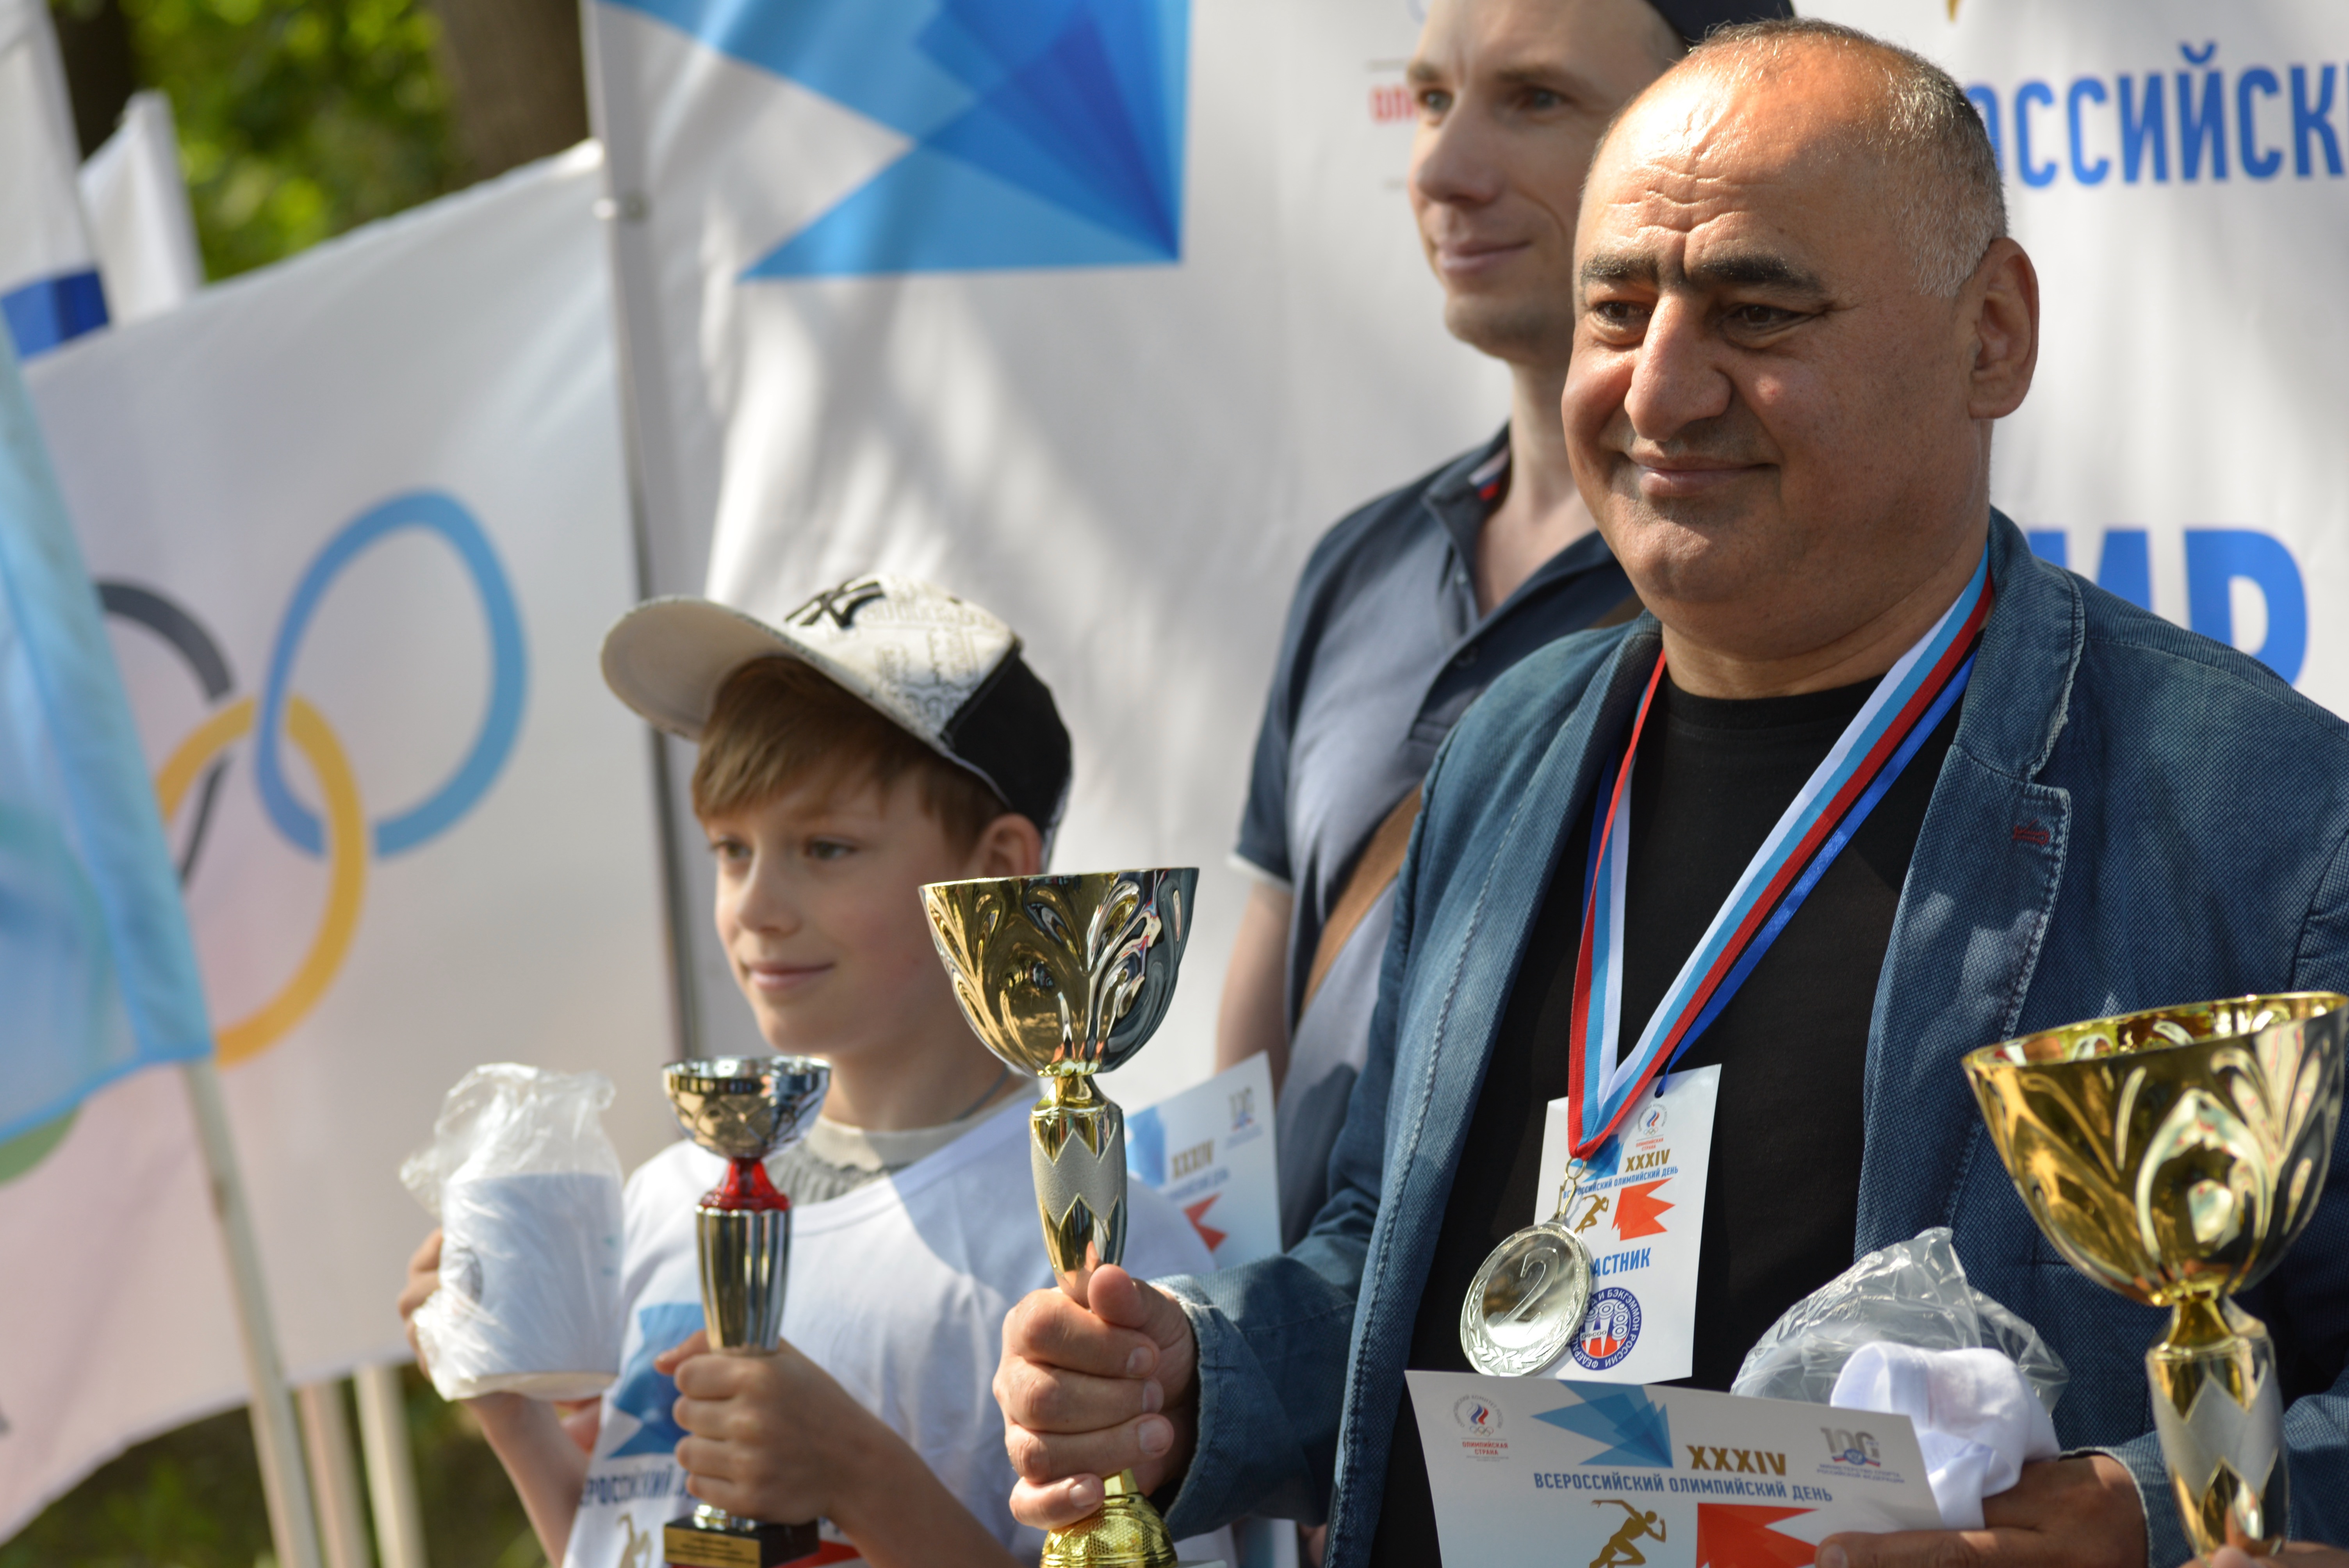 Праздник спорта и хорошего настроения: XXXIV Всероссийский Олимпийский день прошел в Костроме 18 июня